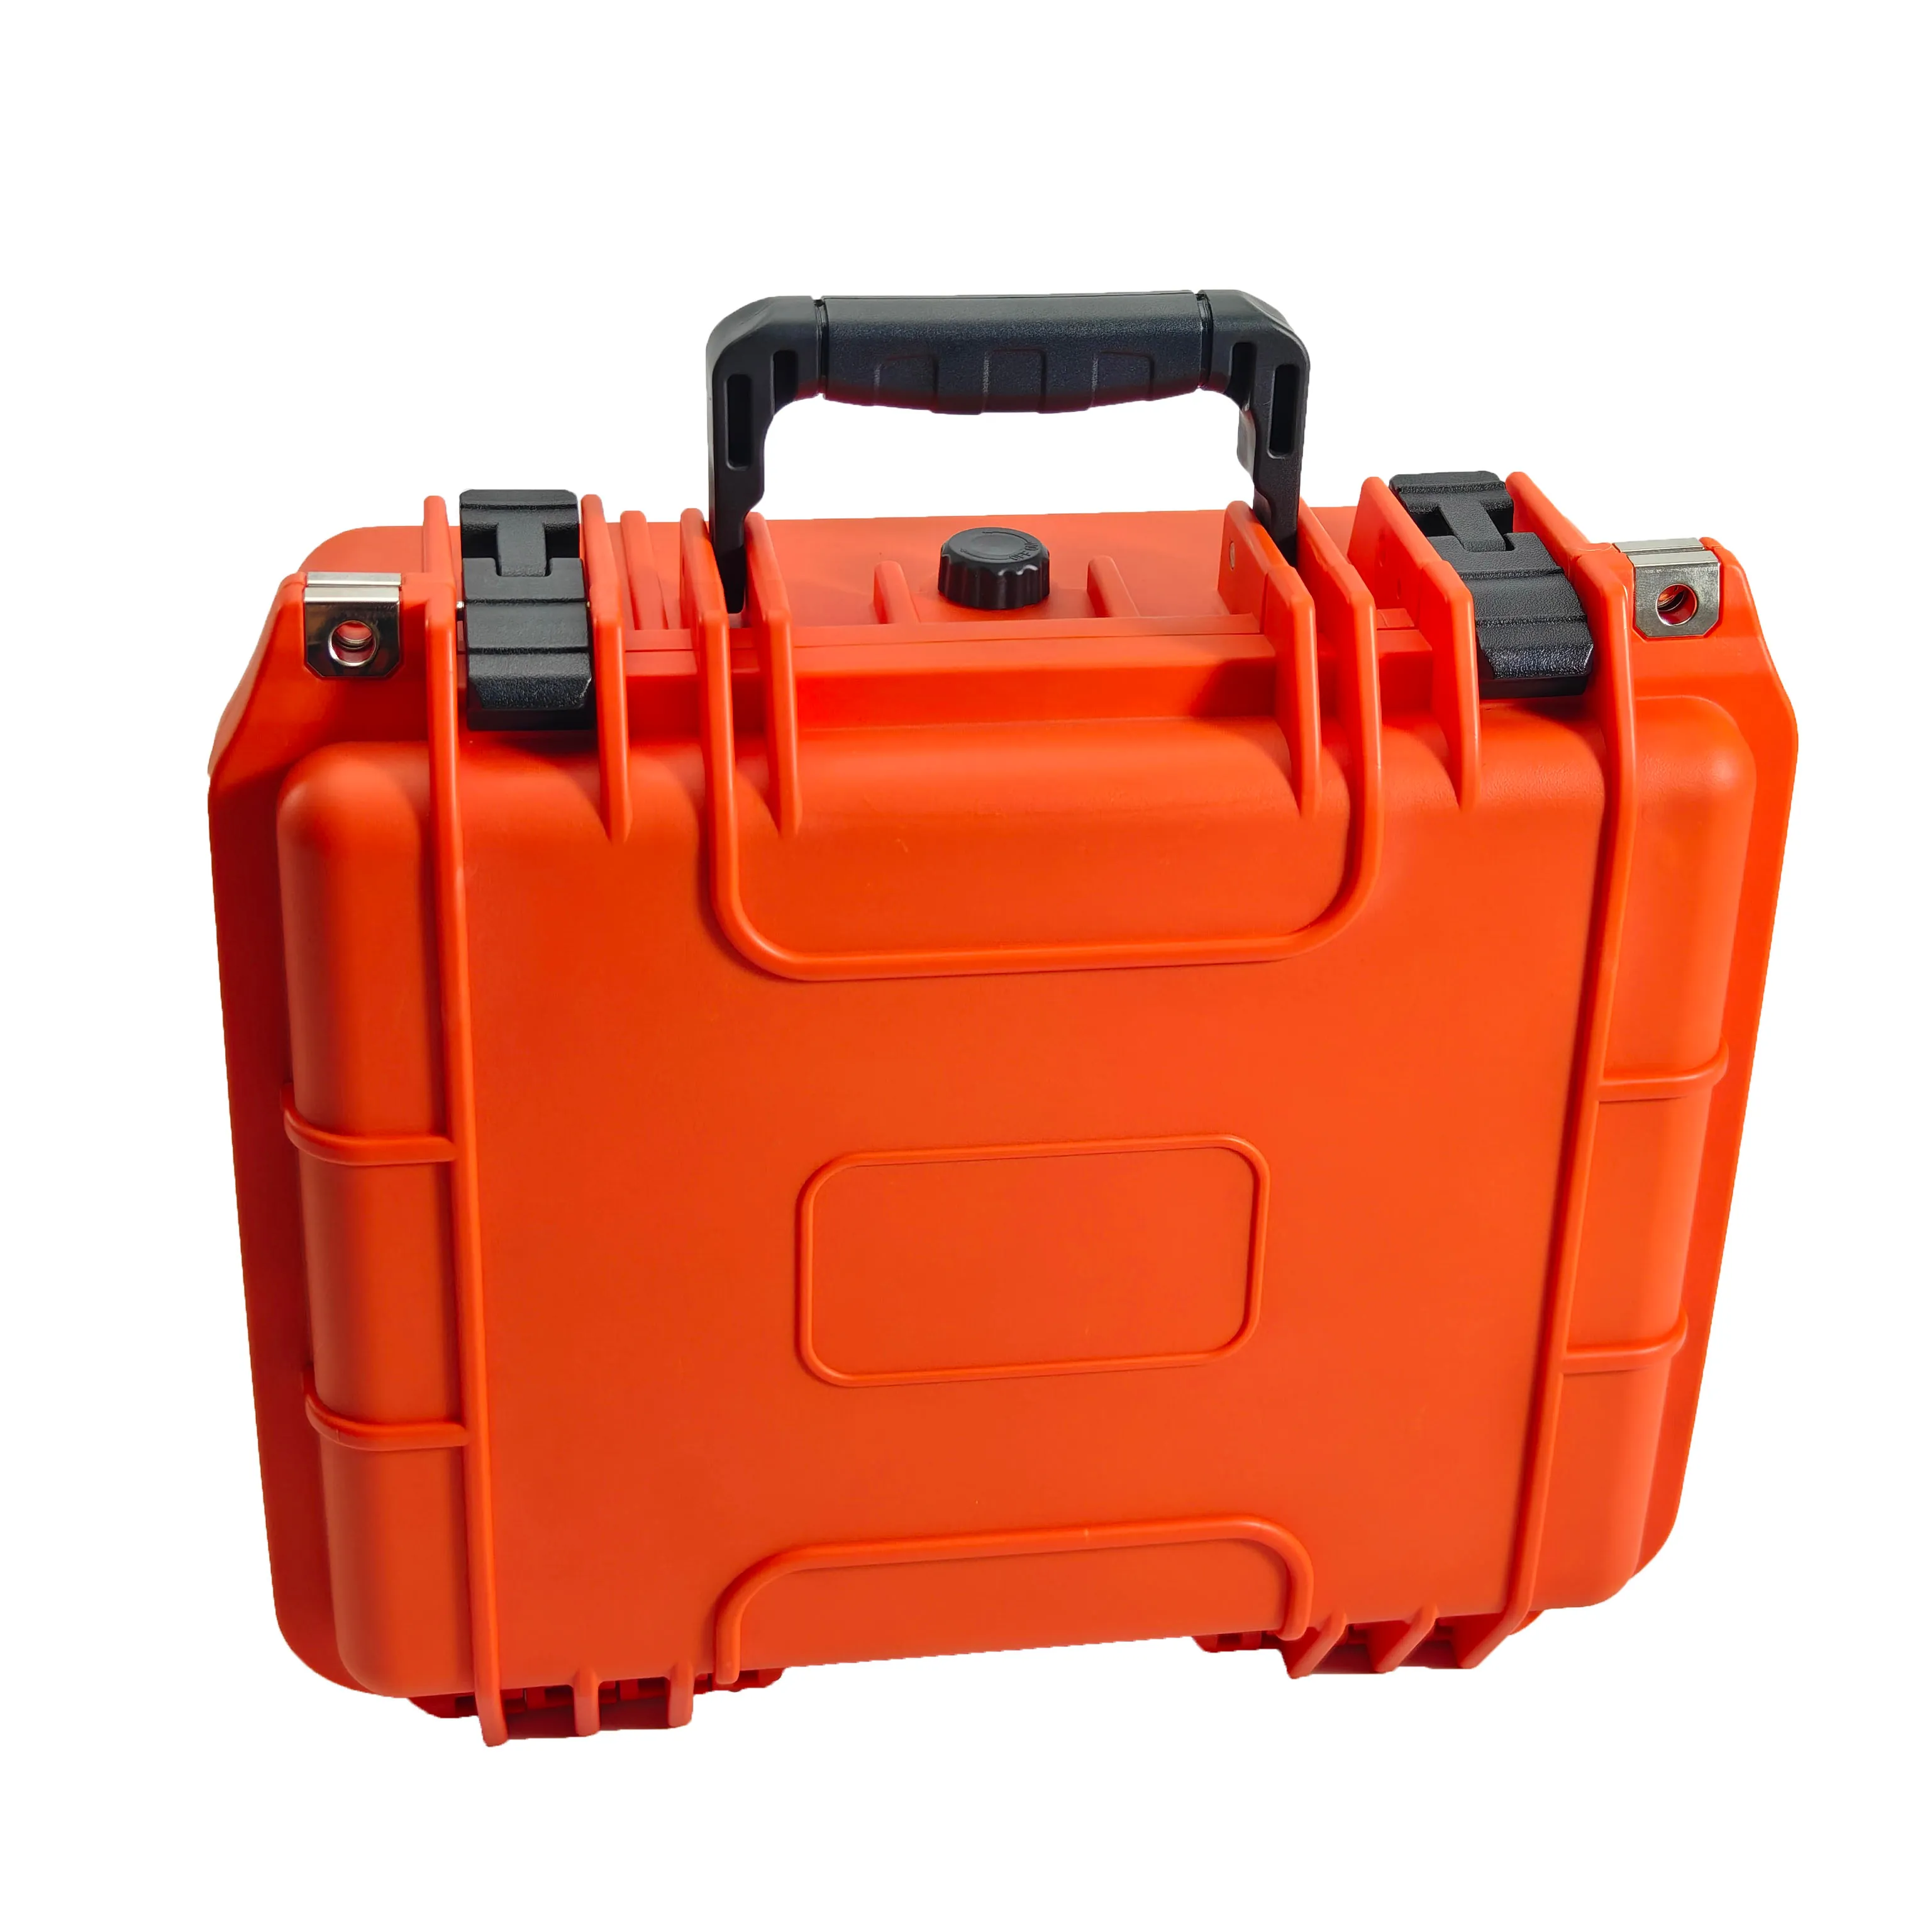 Turuncu renk IP67 su geçirmez toz geçirmez darbeye dayanıklı alet kutusu taşınabilir sert plastik kasa